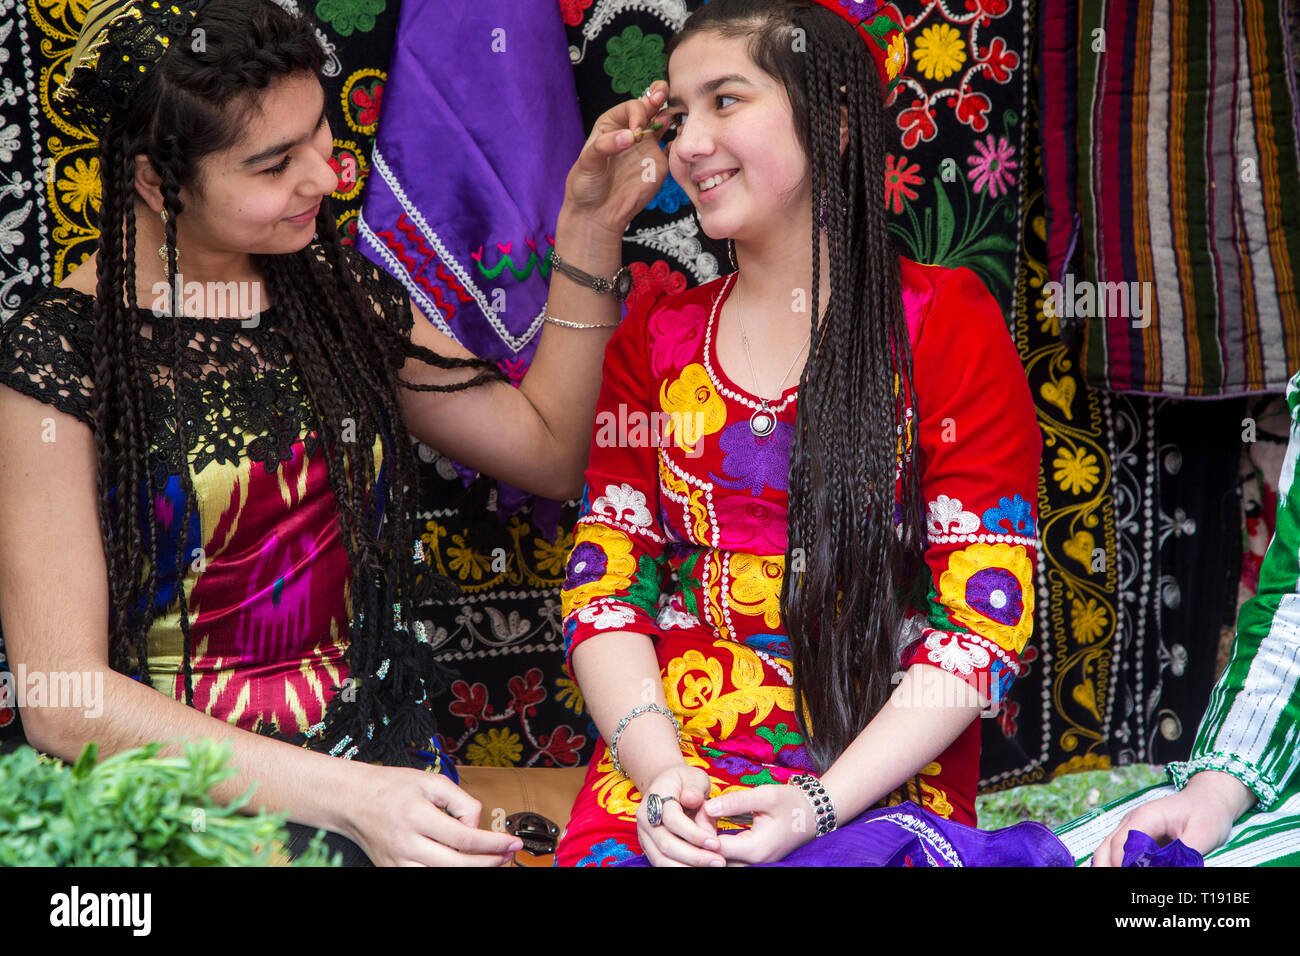 Полно таджикски. Культура Таджикистана. Таджикские девушки. Таджикские платья. Узбекские национальные платья.